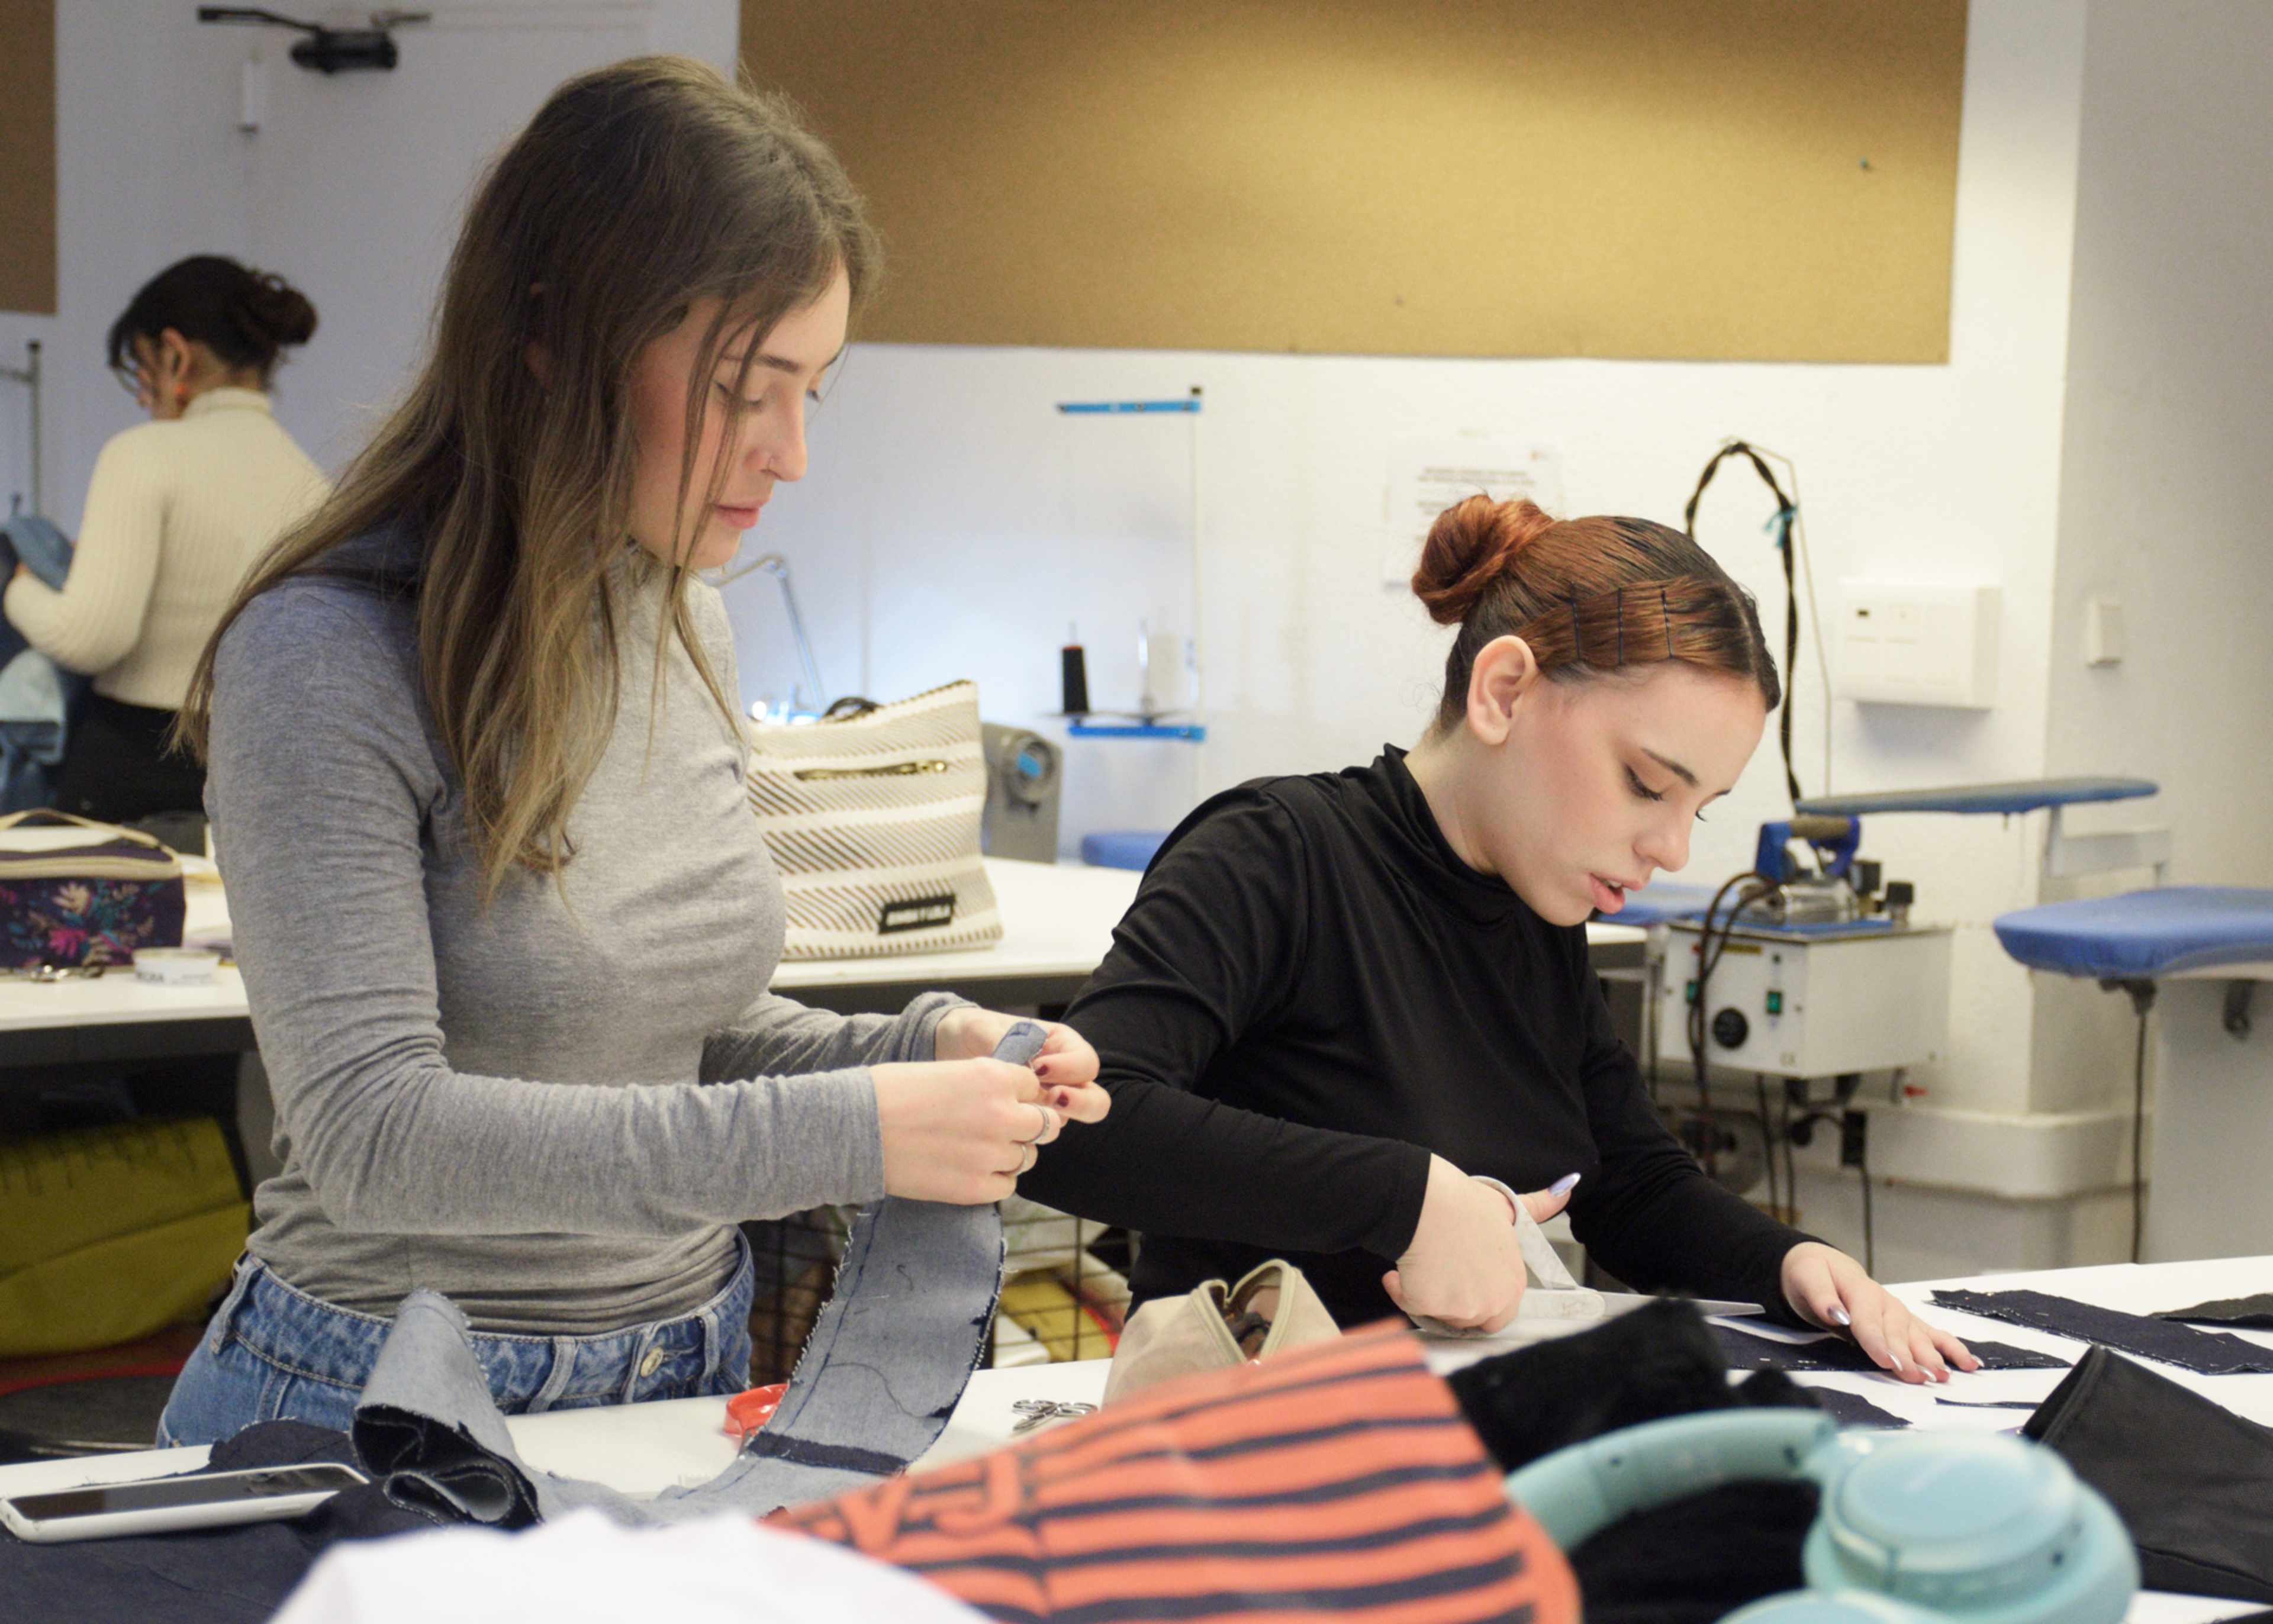 Estudiantes de moda concentrados cosiendo a mano y ensamblando piezas en un taller, rodeados de tela y equipo de costura.

